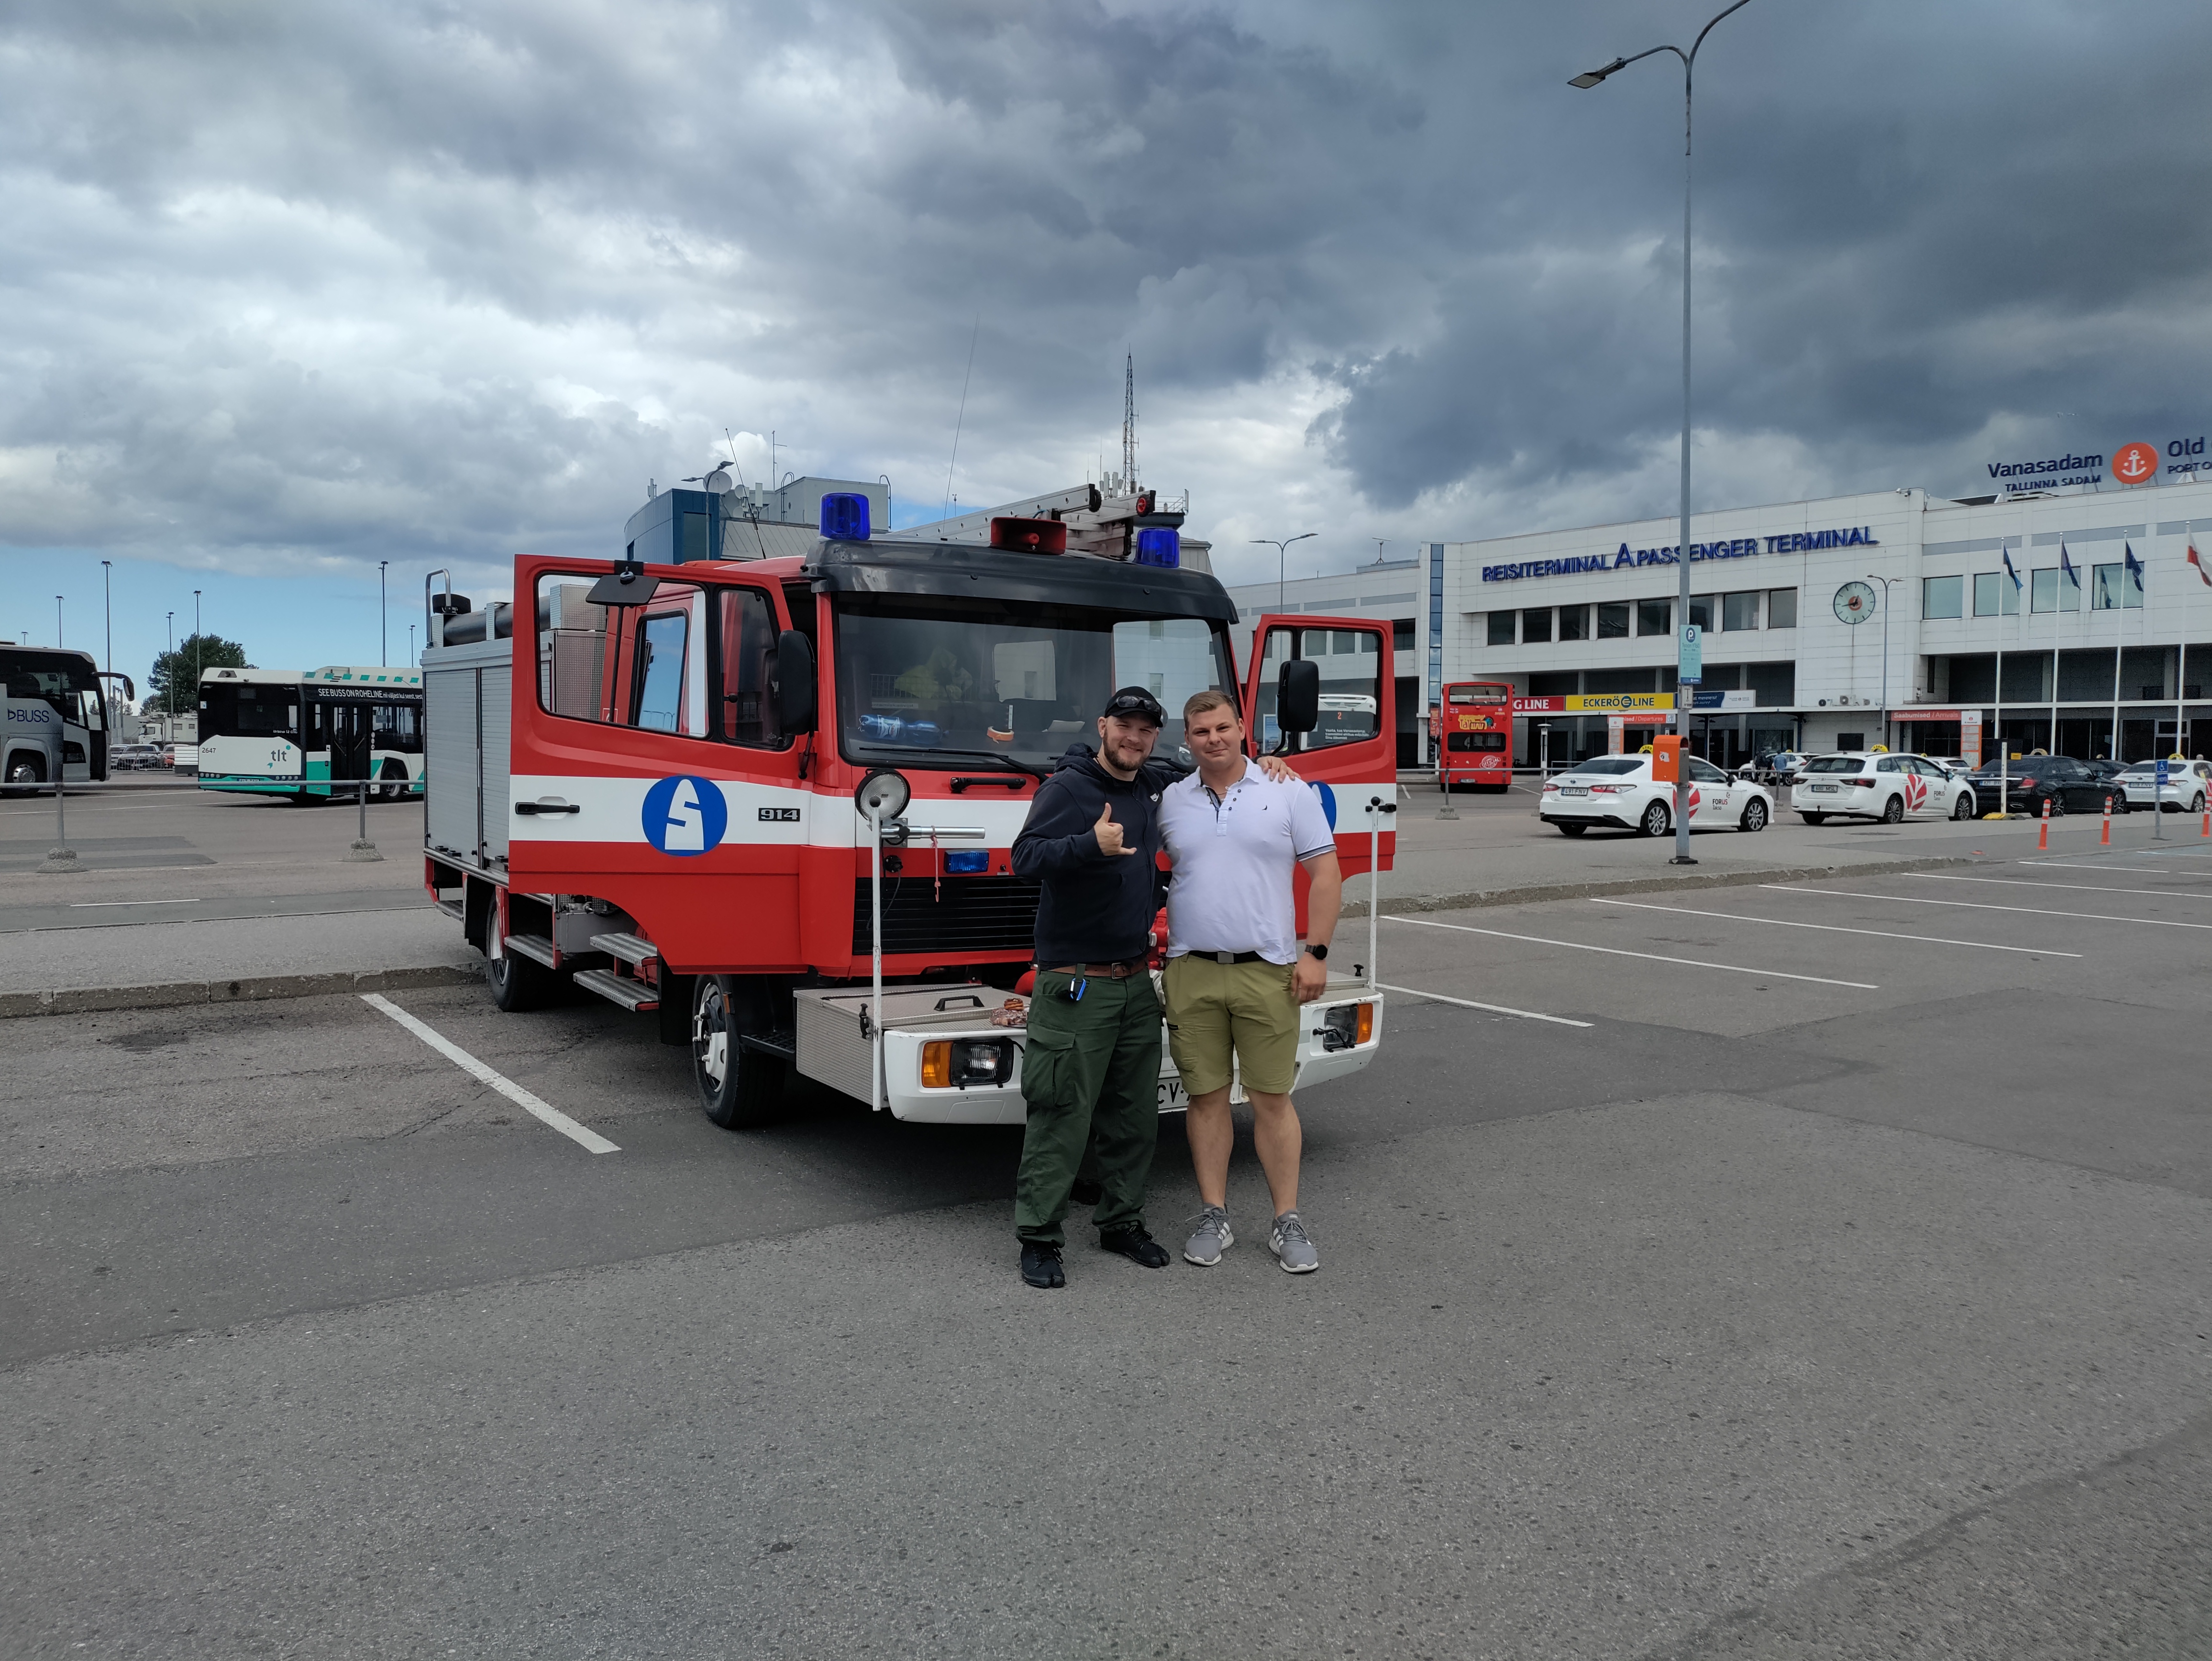 Vanha Suomen Sokerin sammutusauto ja kaksi pelastajaa LÄnsi-Uudenmaan pelastuslaitokselta laivaterminaalissa lähdössä Ukrainaa kohti.